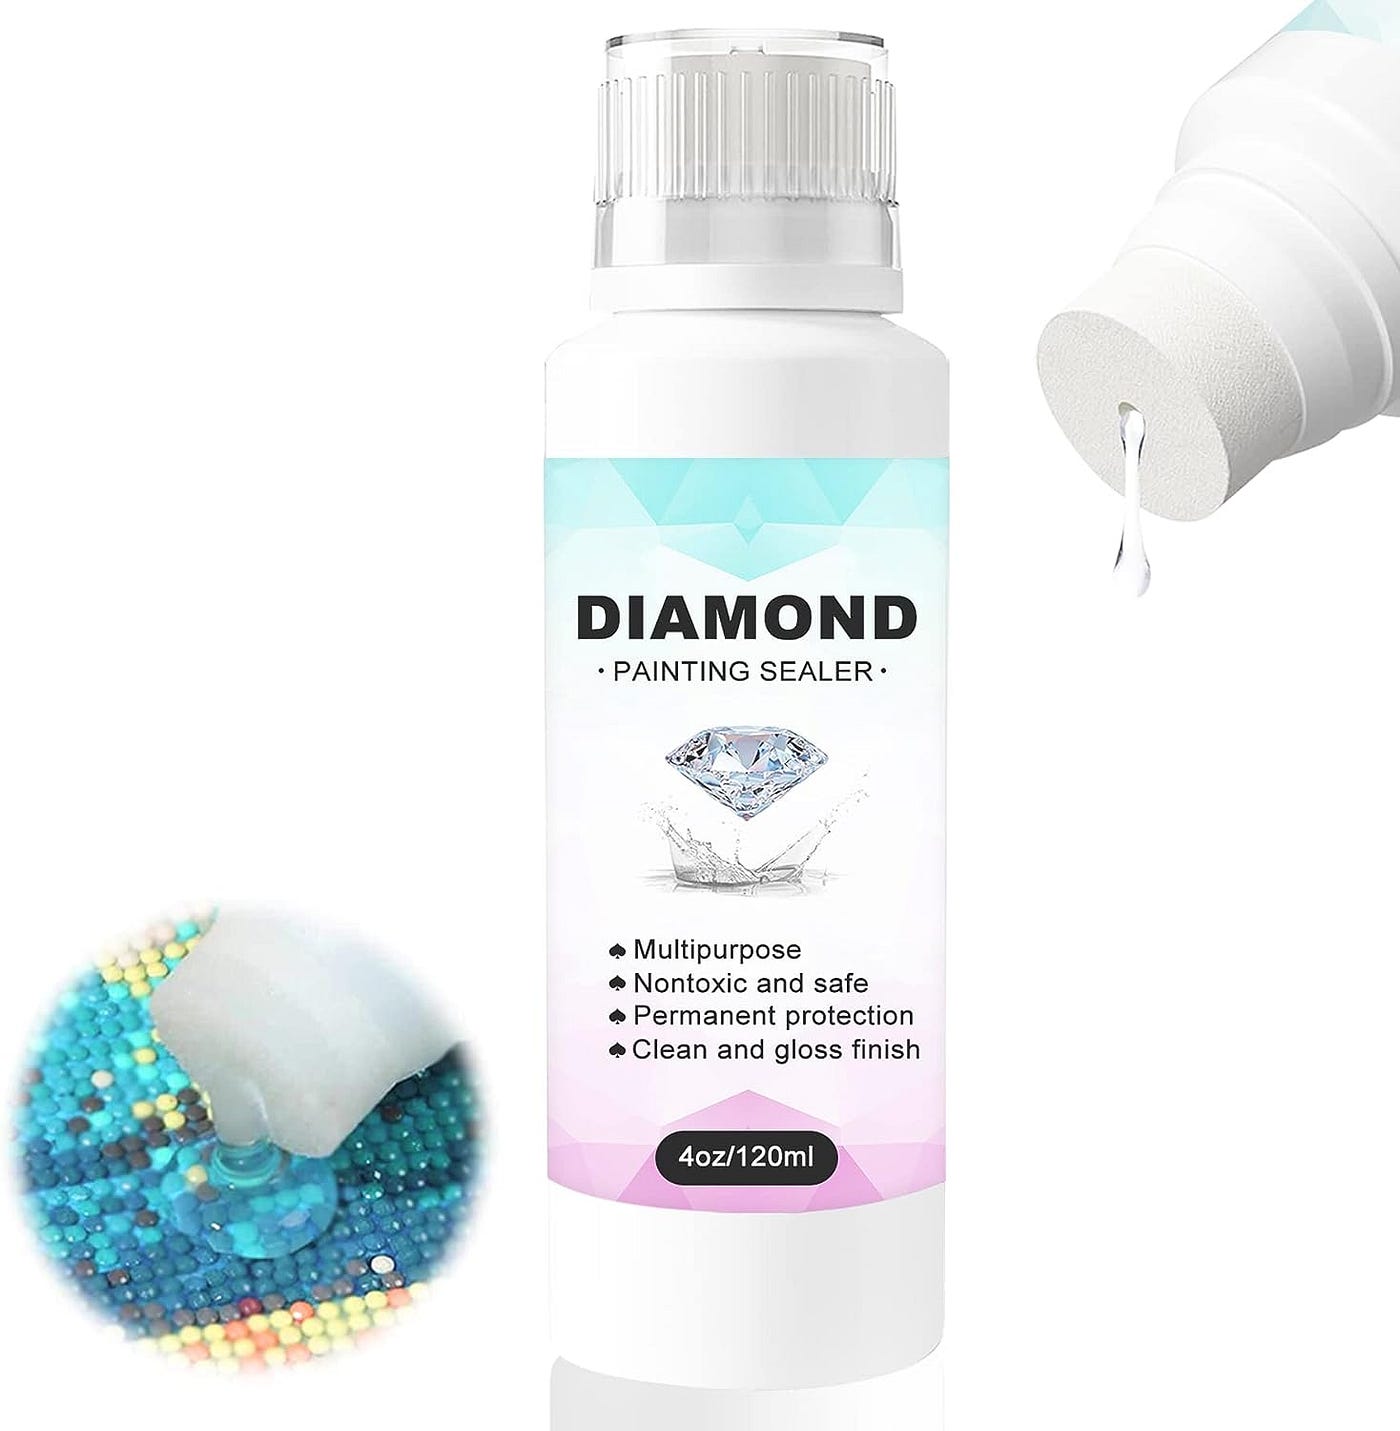  Diamond Painting Sealer Kit-4OZ, Diamond Painting Glue For Diamond  Painting Sets, Diamond Art Glue Is Used To Protect Diamond Paintings,  Permanent Sparkle Diamond Art Sealer Kit